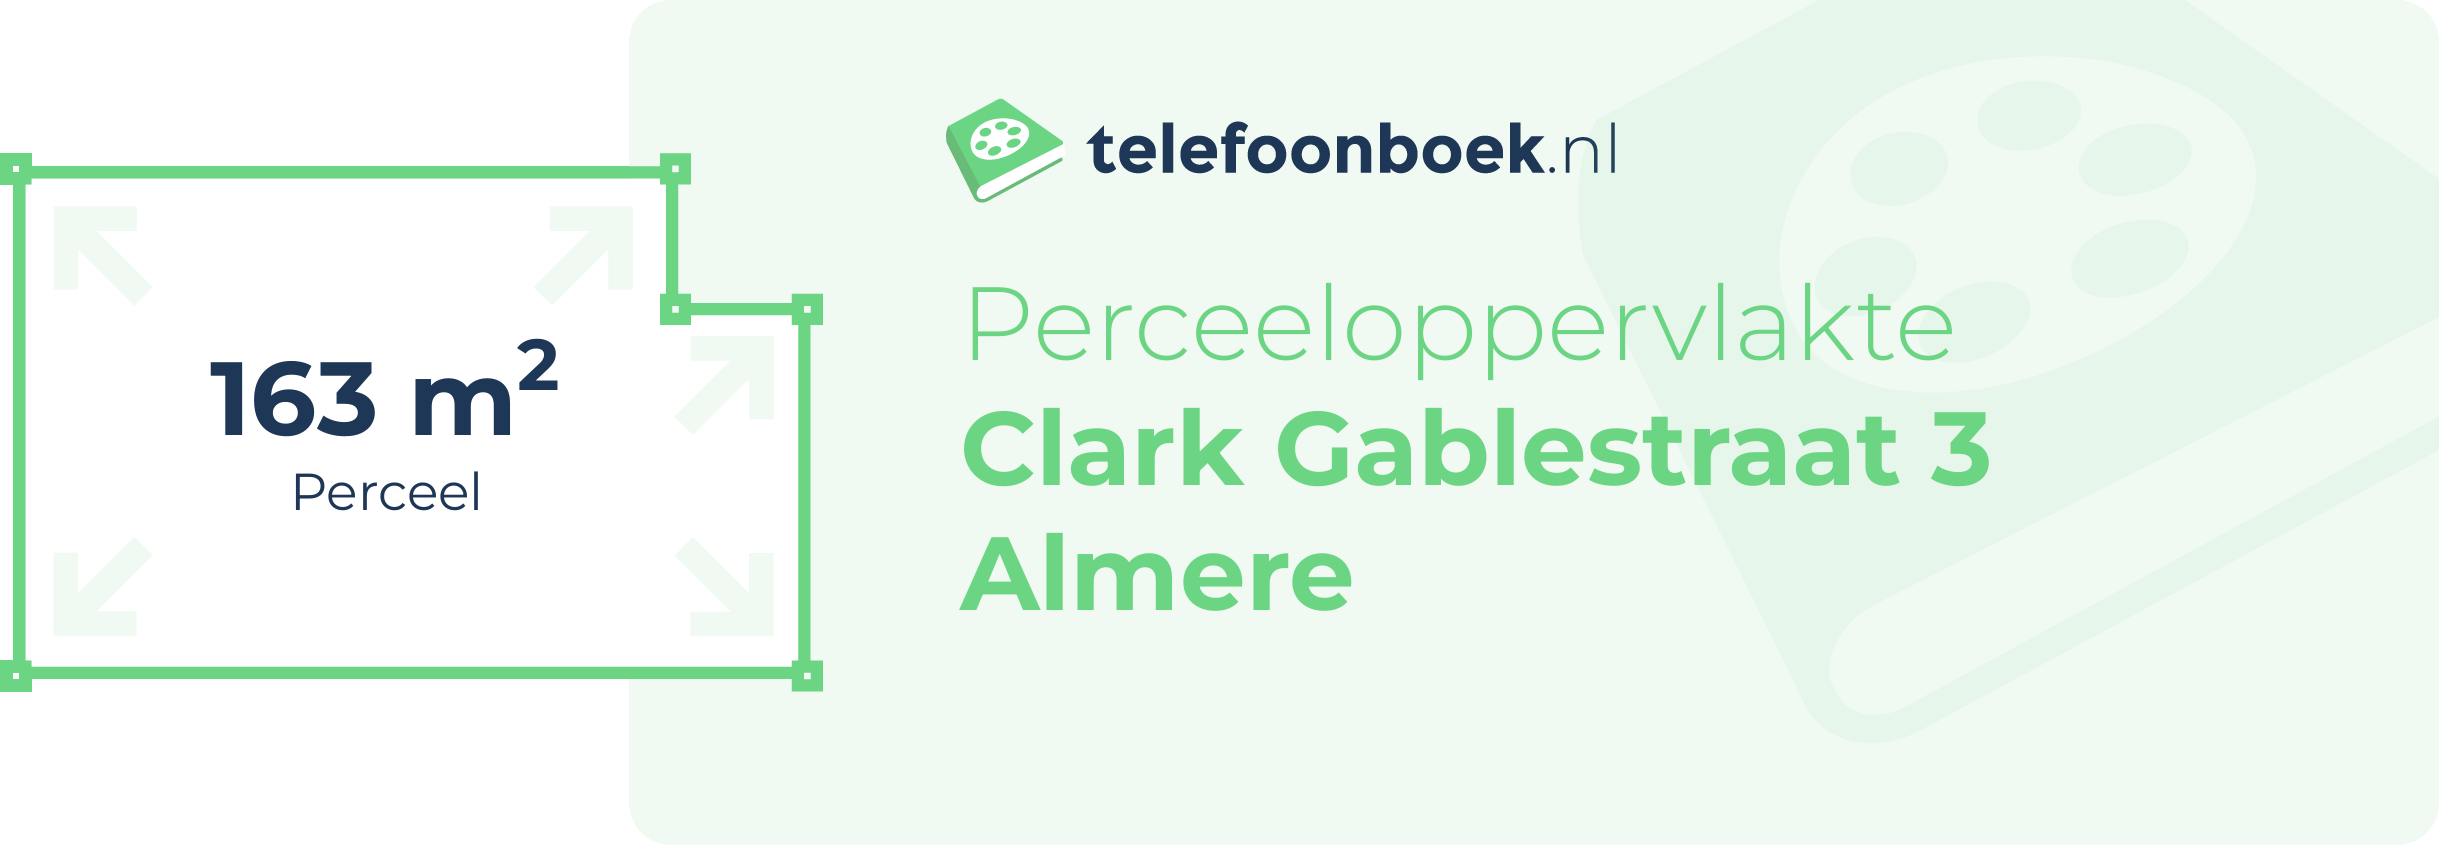 Perceeloppervlakte Clark Gablestraat 3 Almere